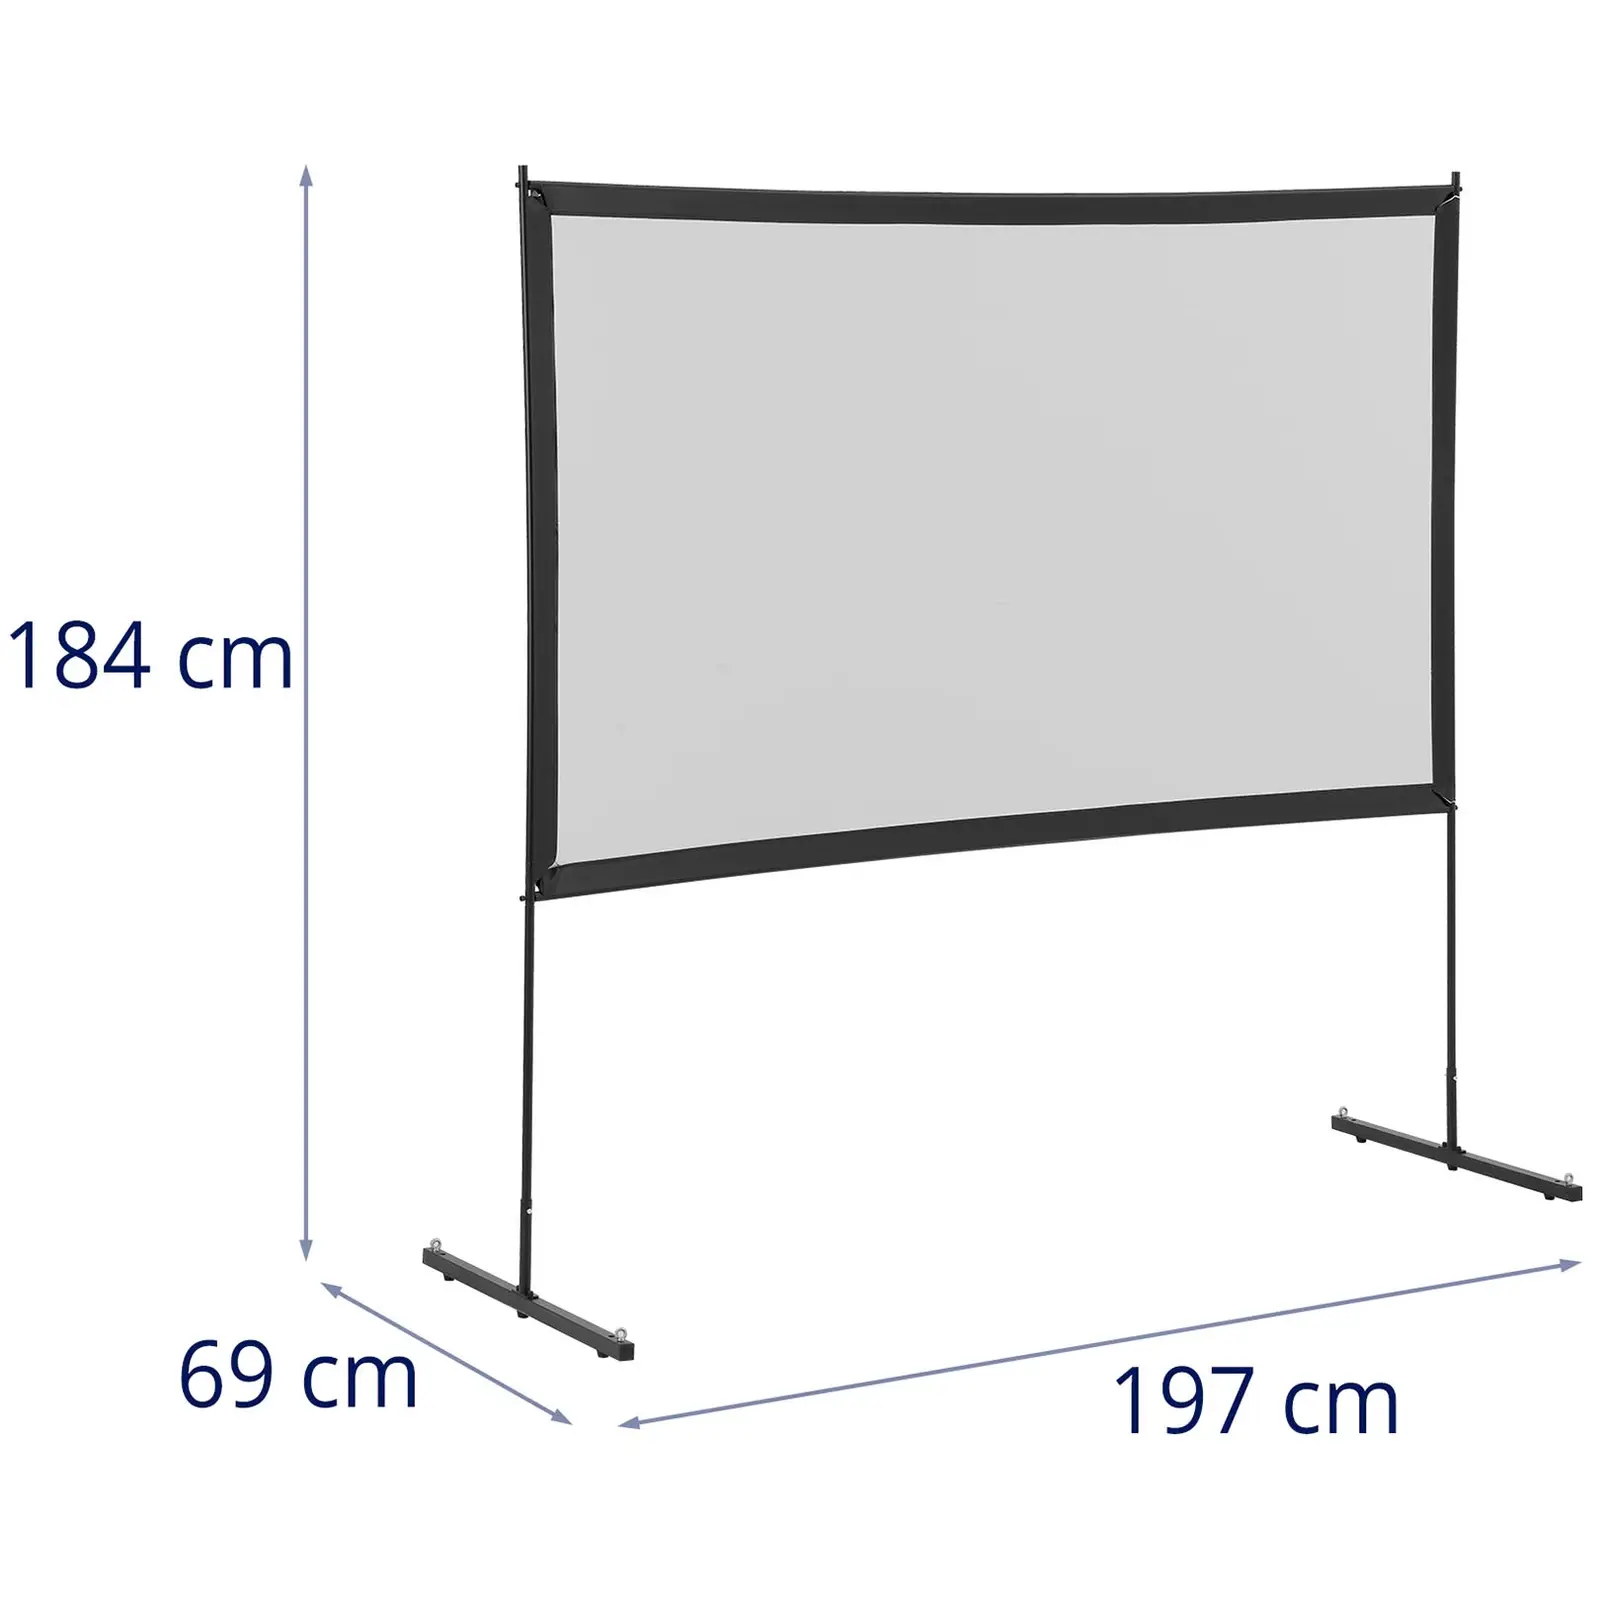 Tela de projeção - 186 x 105 cm - 16:9 - 84" - estrutura de aço